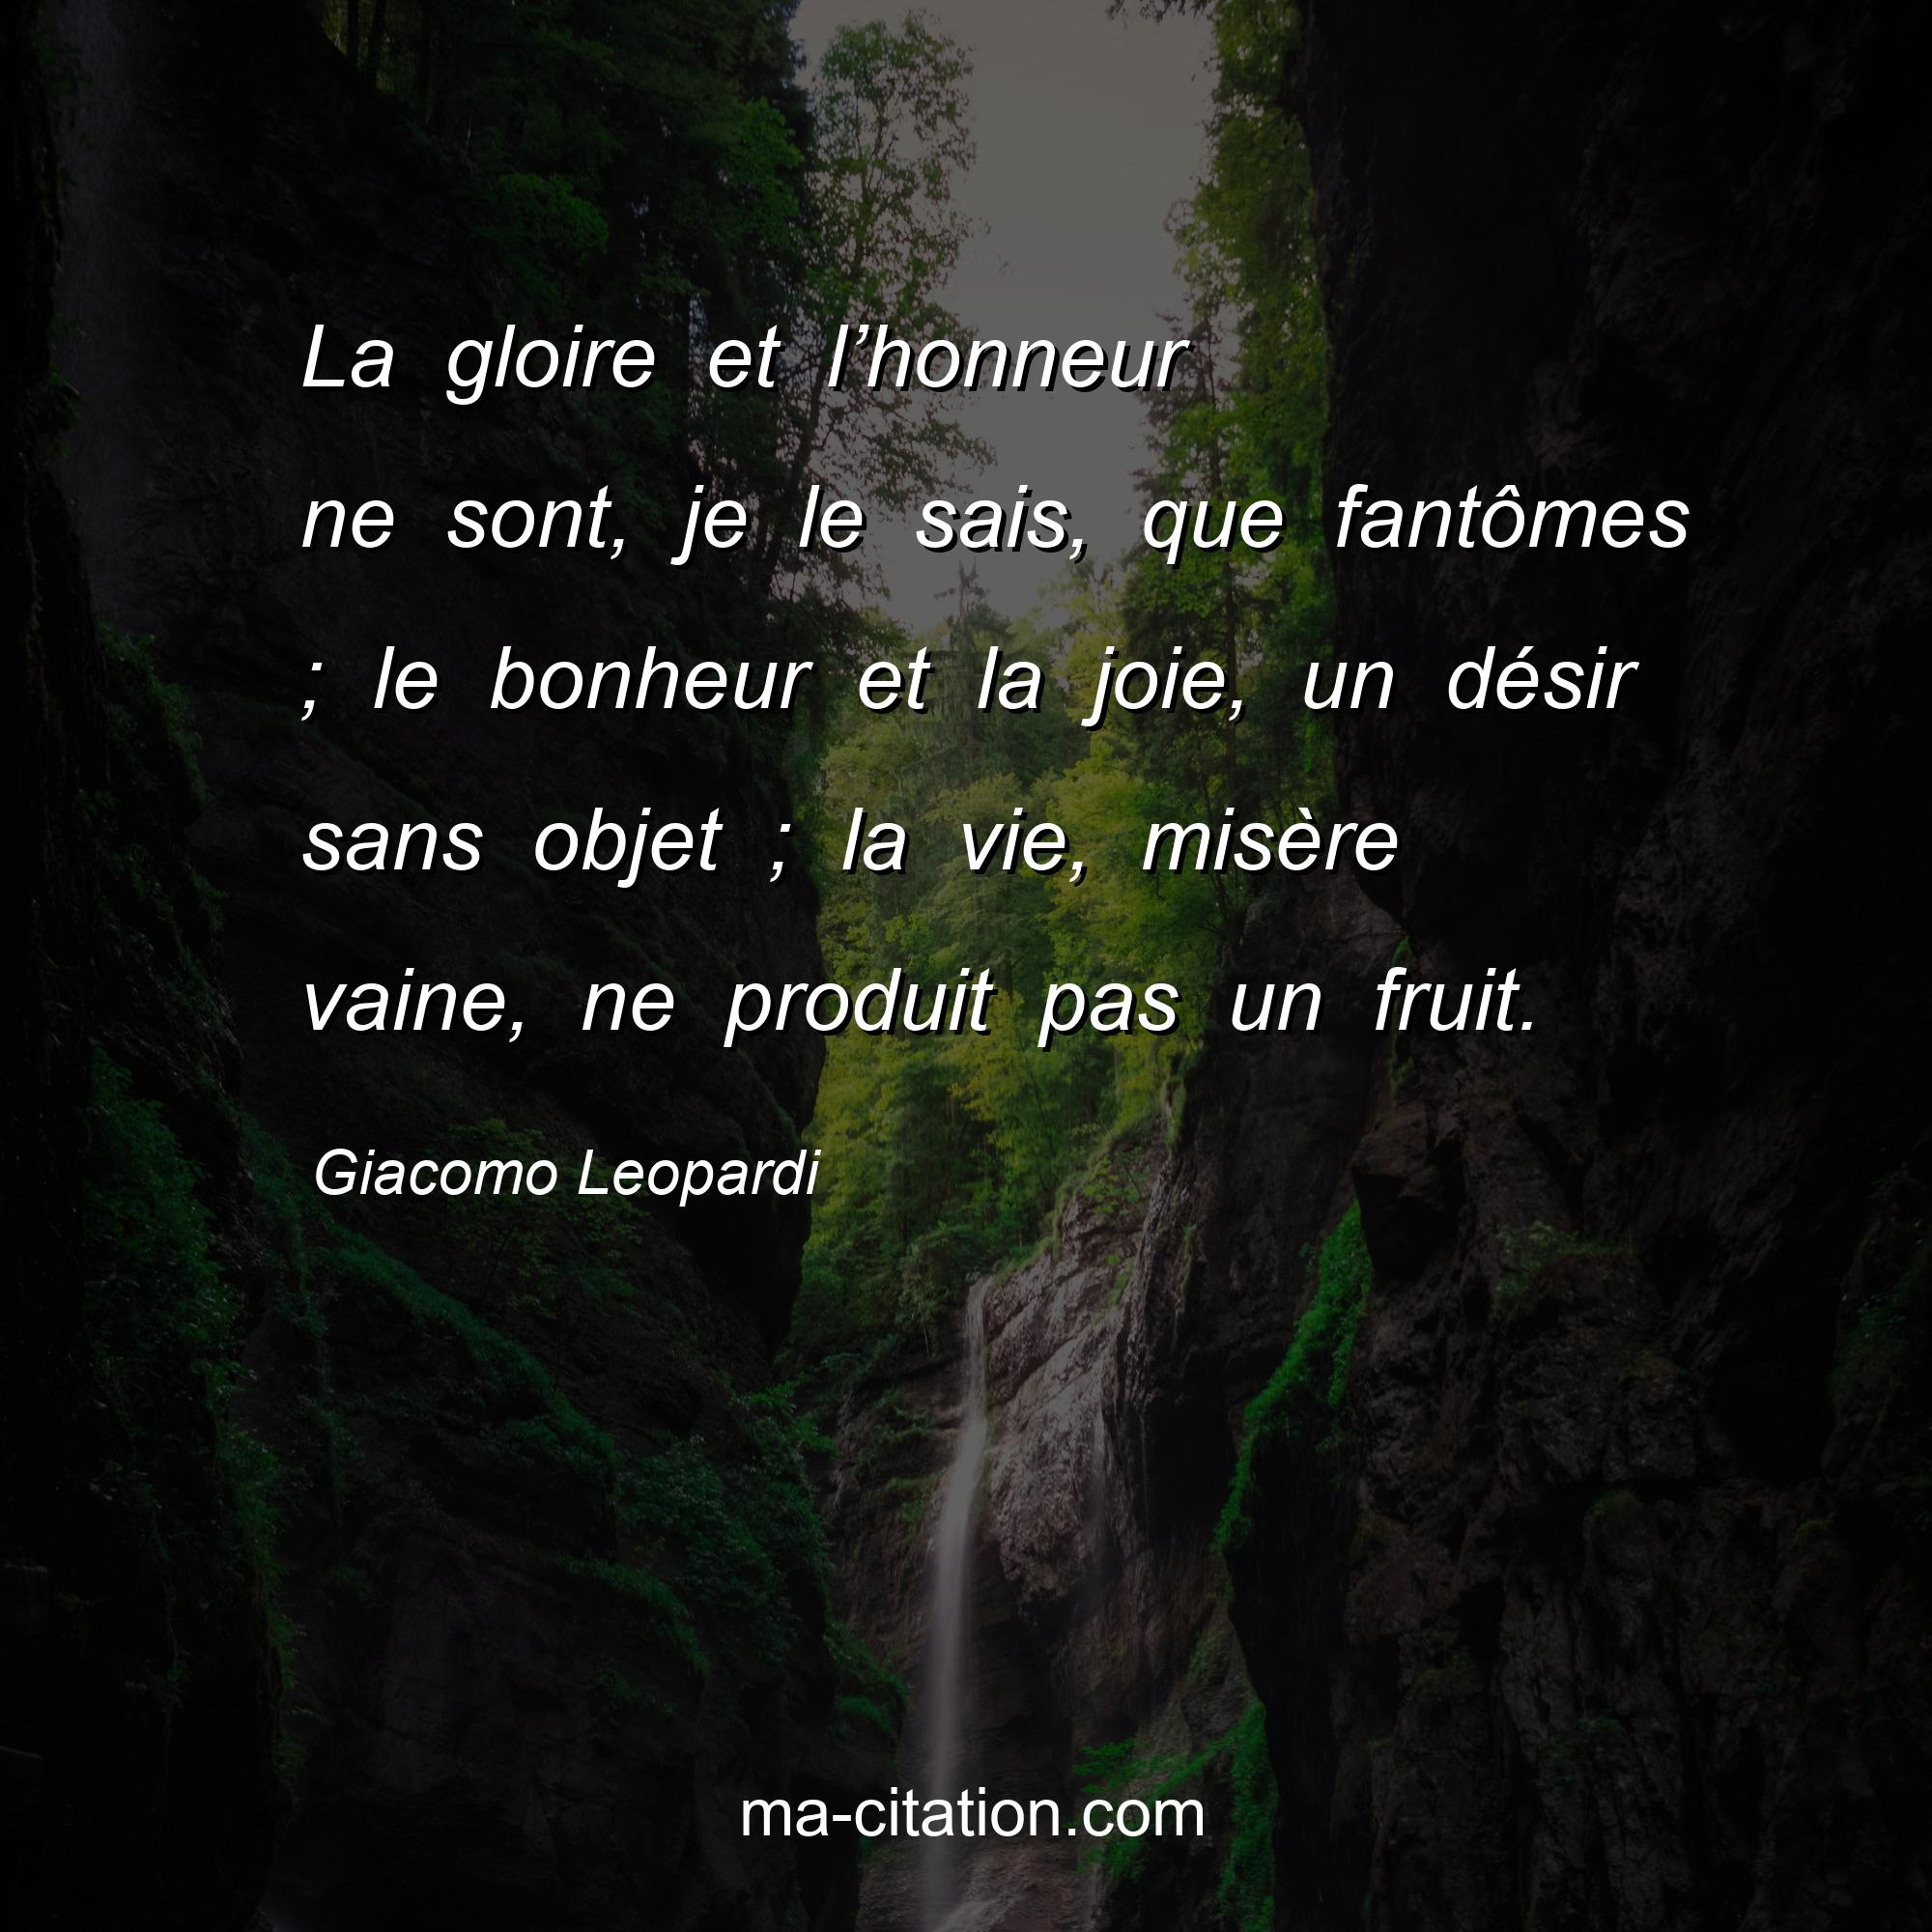 Giacomo Leopardi : La gloire et l’honneur ne sont, je le sais, que fantômes ; le bonheur et la joie, un désir sans objet ; la vie, misère vaine, ne produit pas un fruit.